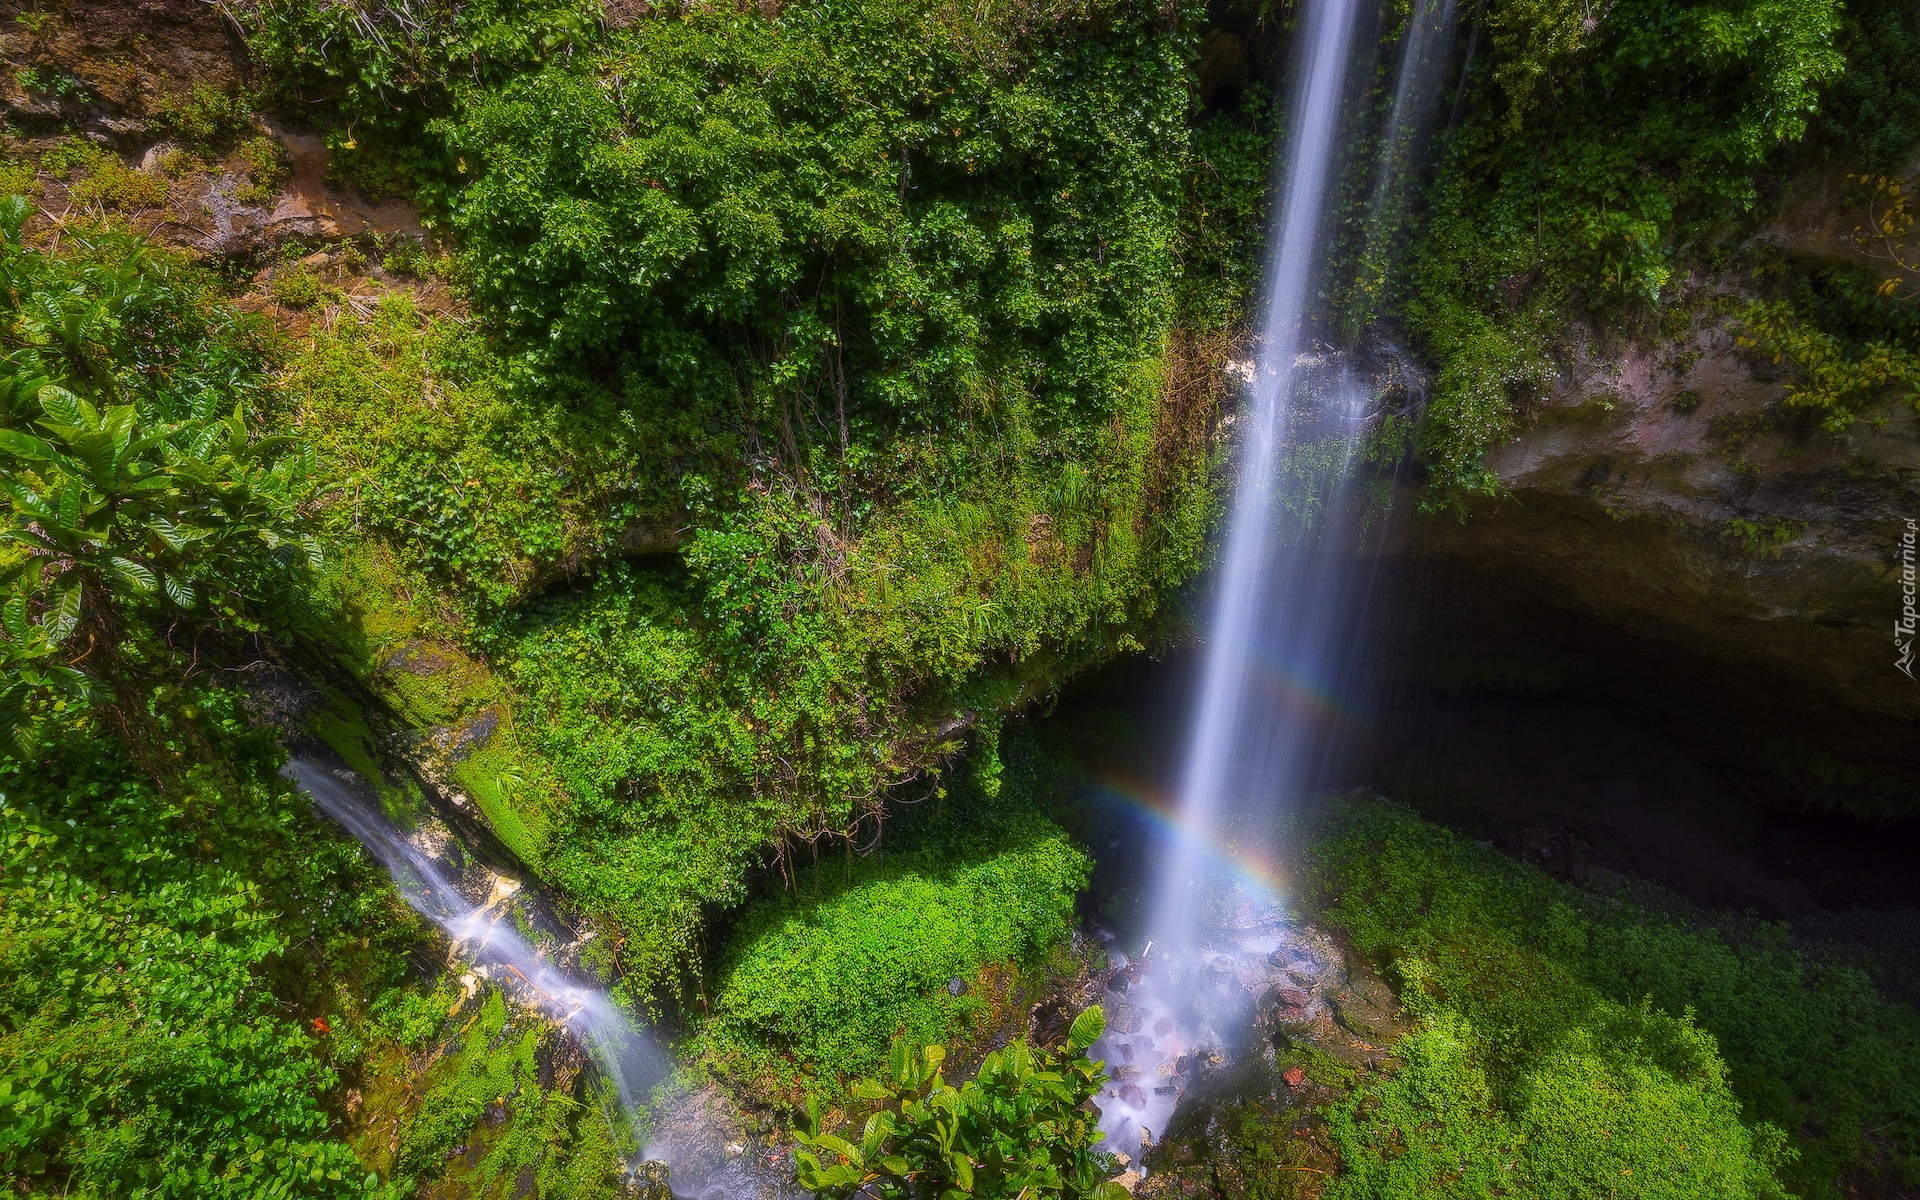 Wodospad, Cave Garden Waterfall, Jaskinia, Roślinność, Tęcza, Mount Gambier, Australia